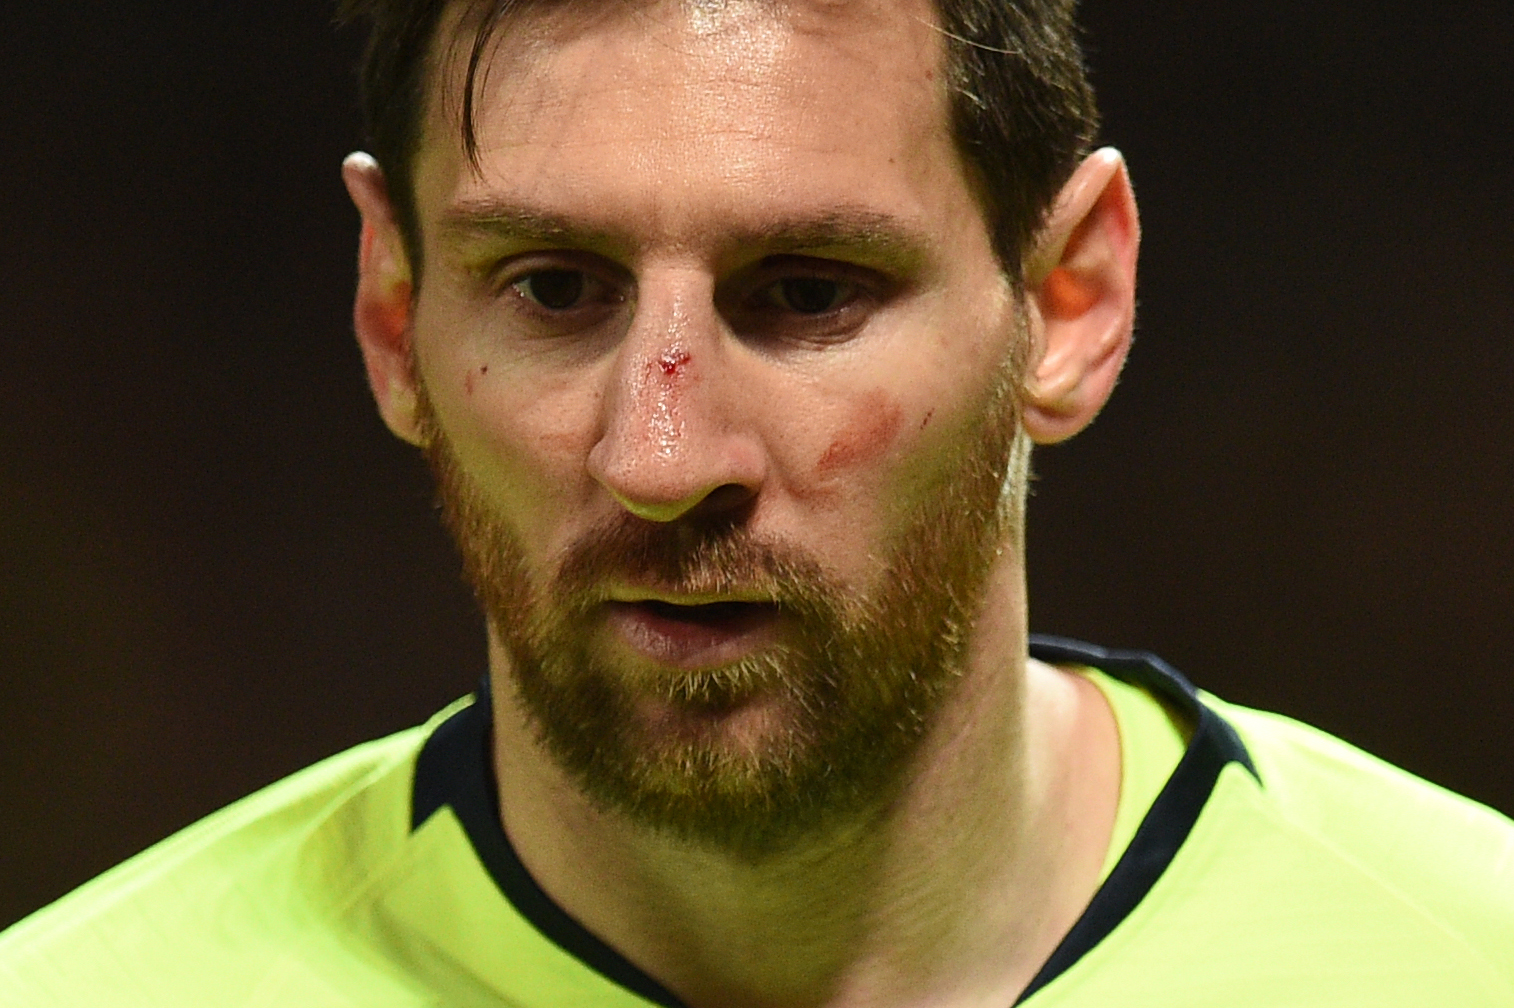 La mirada de perdida de Lionel Messi después de recibir un golpe en el rostro. (Foto Prensa Libre: AFP)